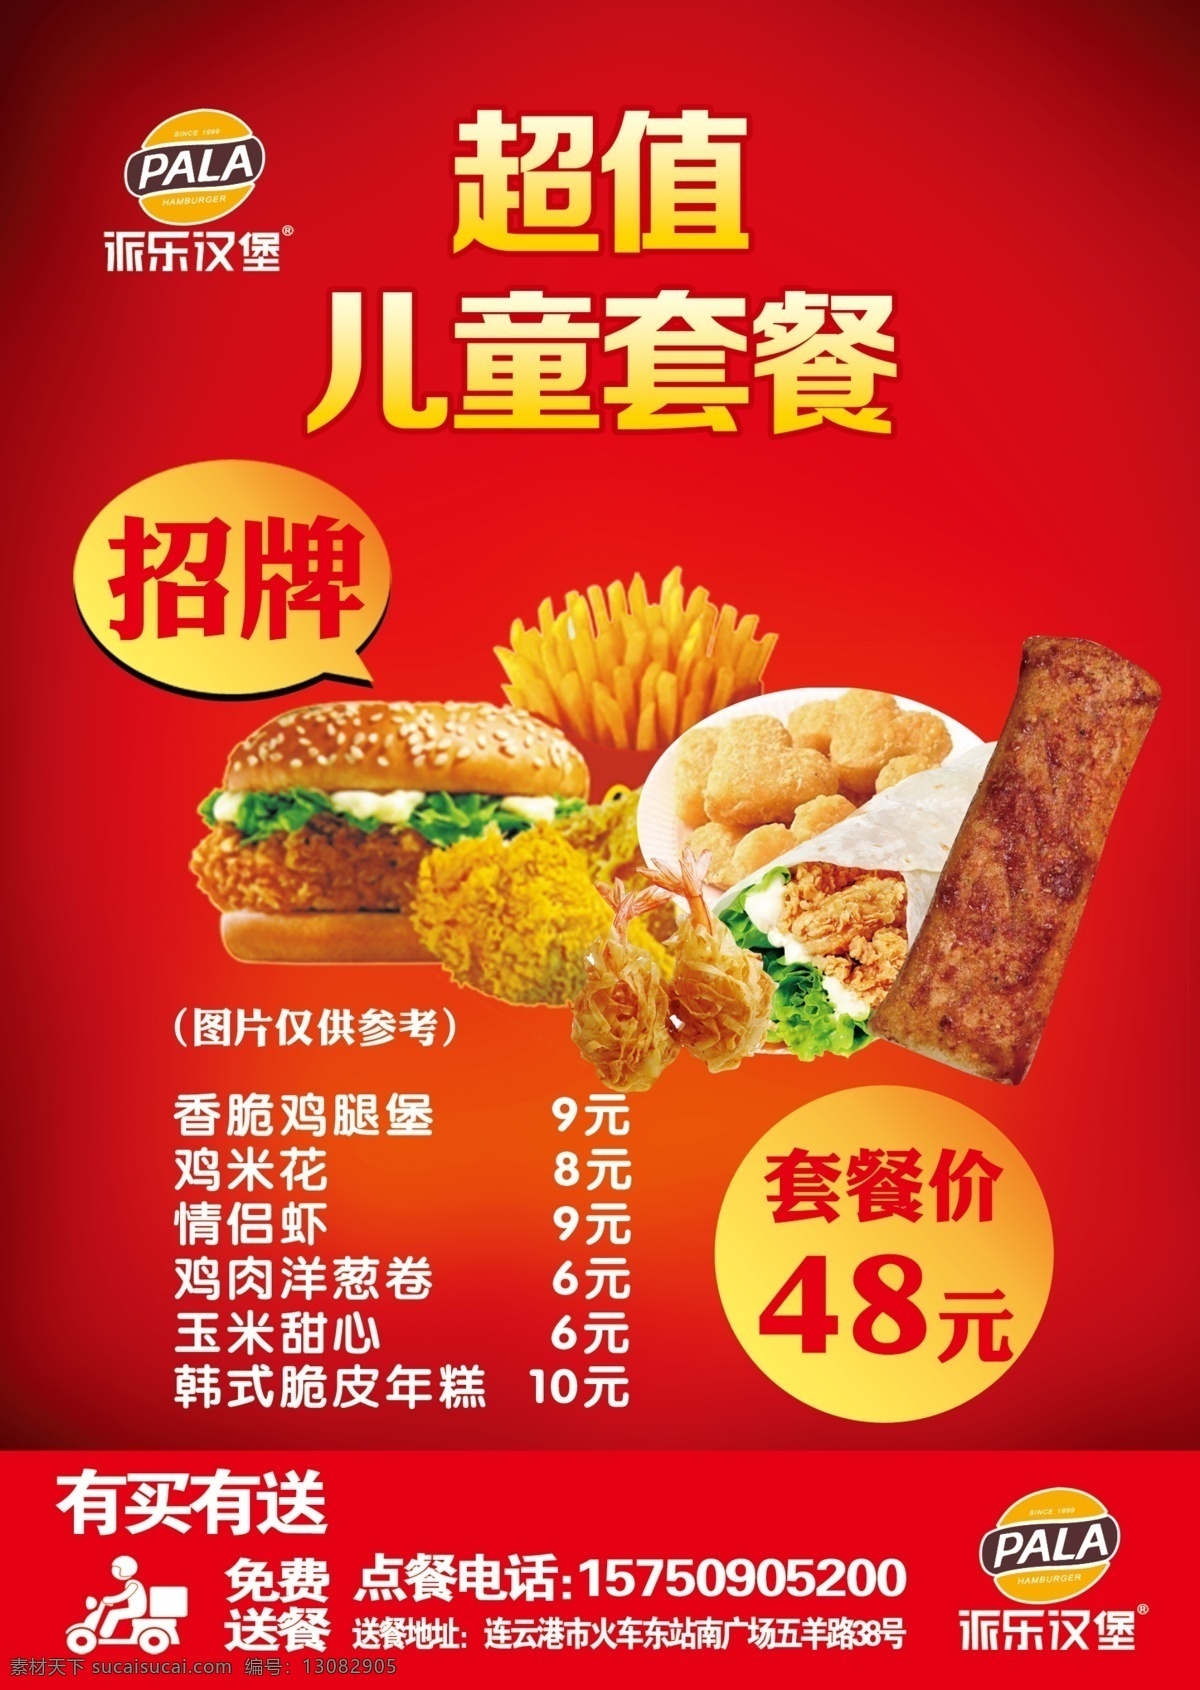 儿童套餐图片 汉堡 薯条 价格 外卖 招牌 海报